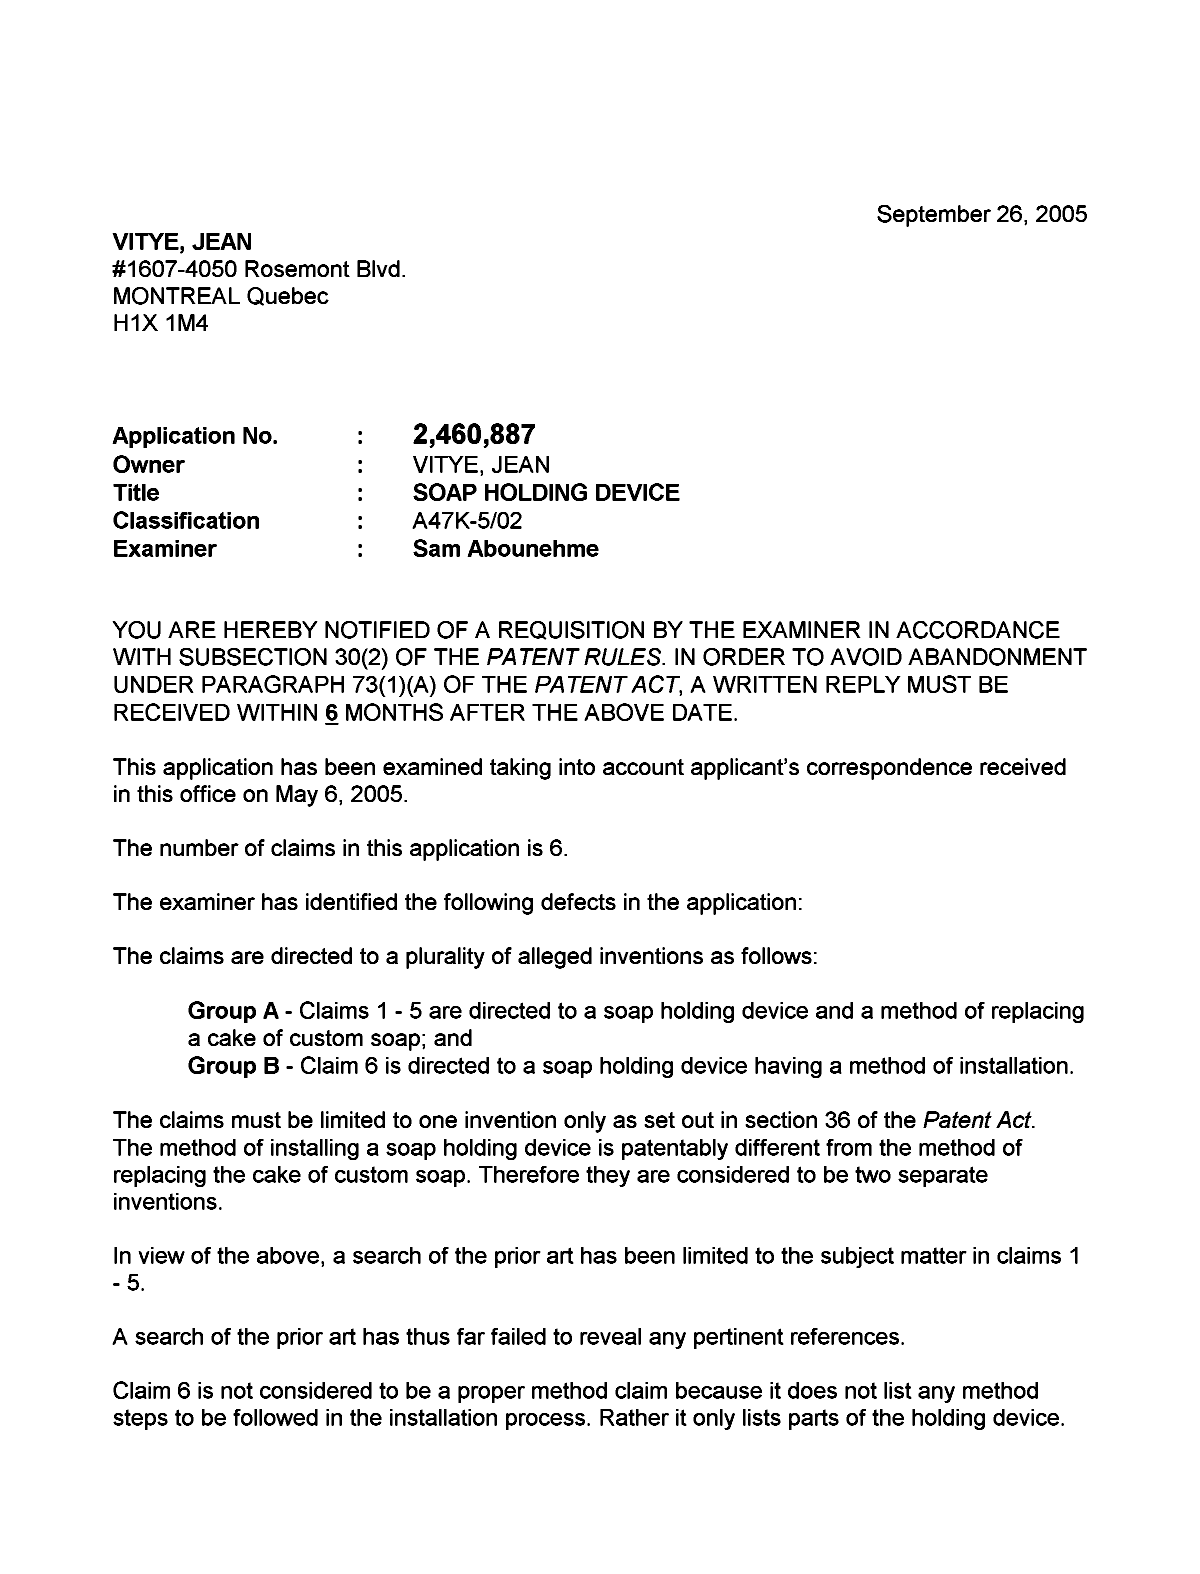 Document de brevet canadien 2460887. Poursuite-Amendment 20050926. Image 1 de 2